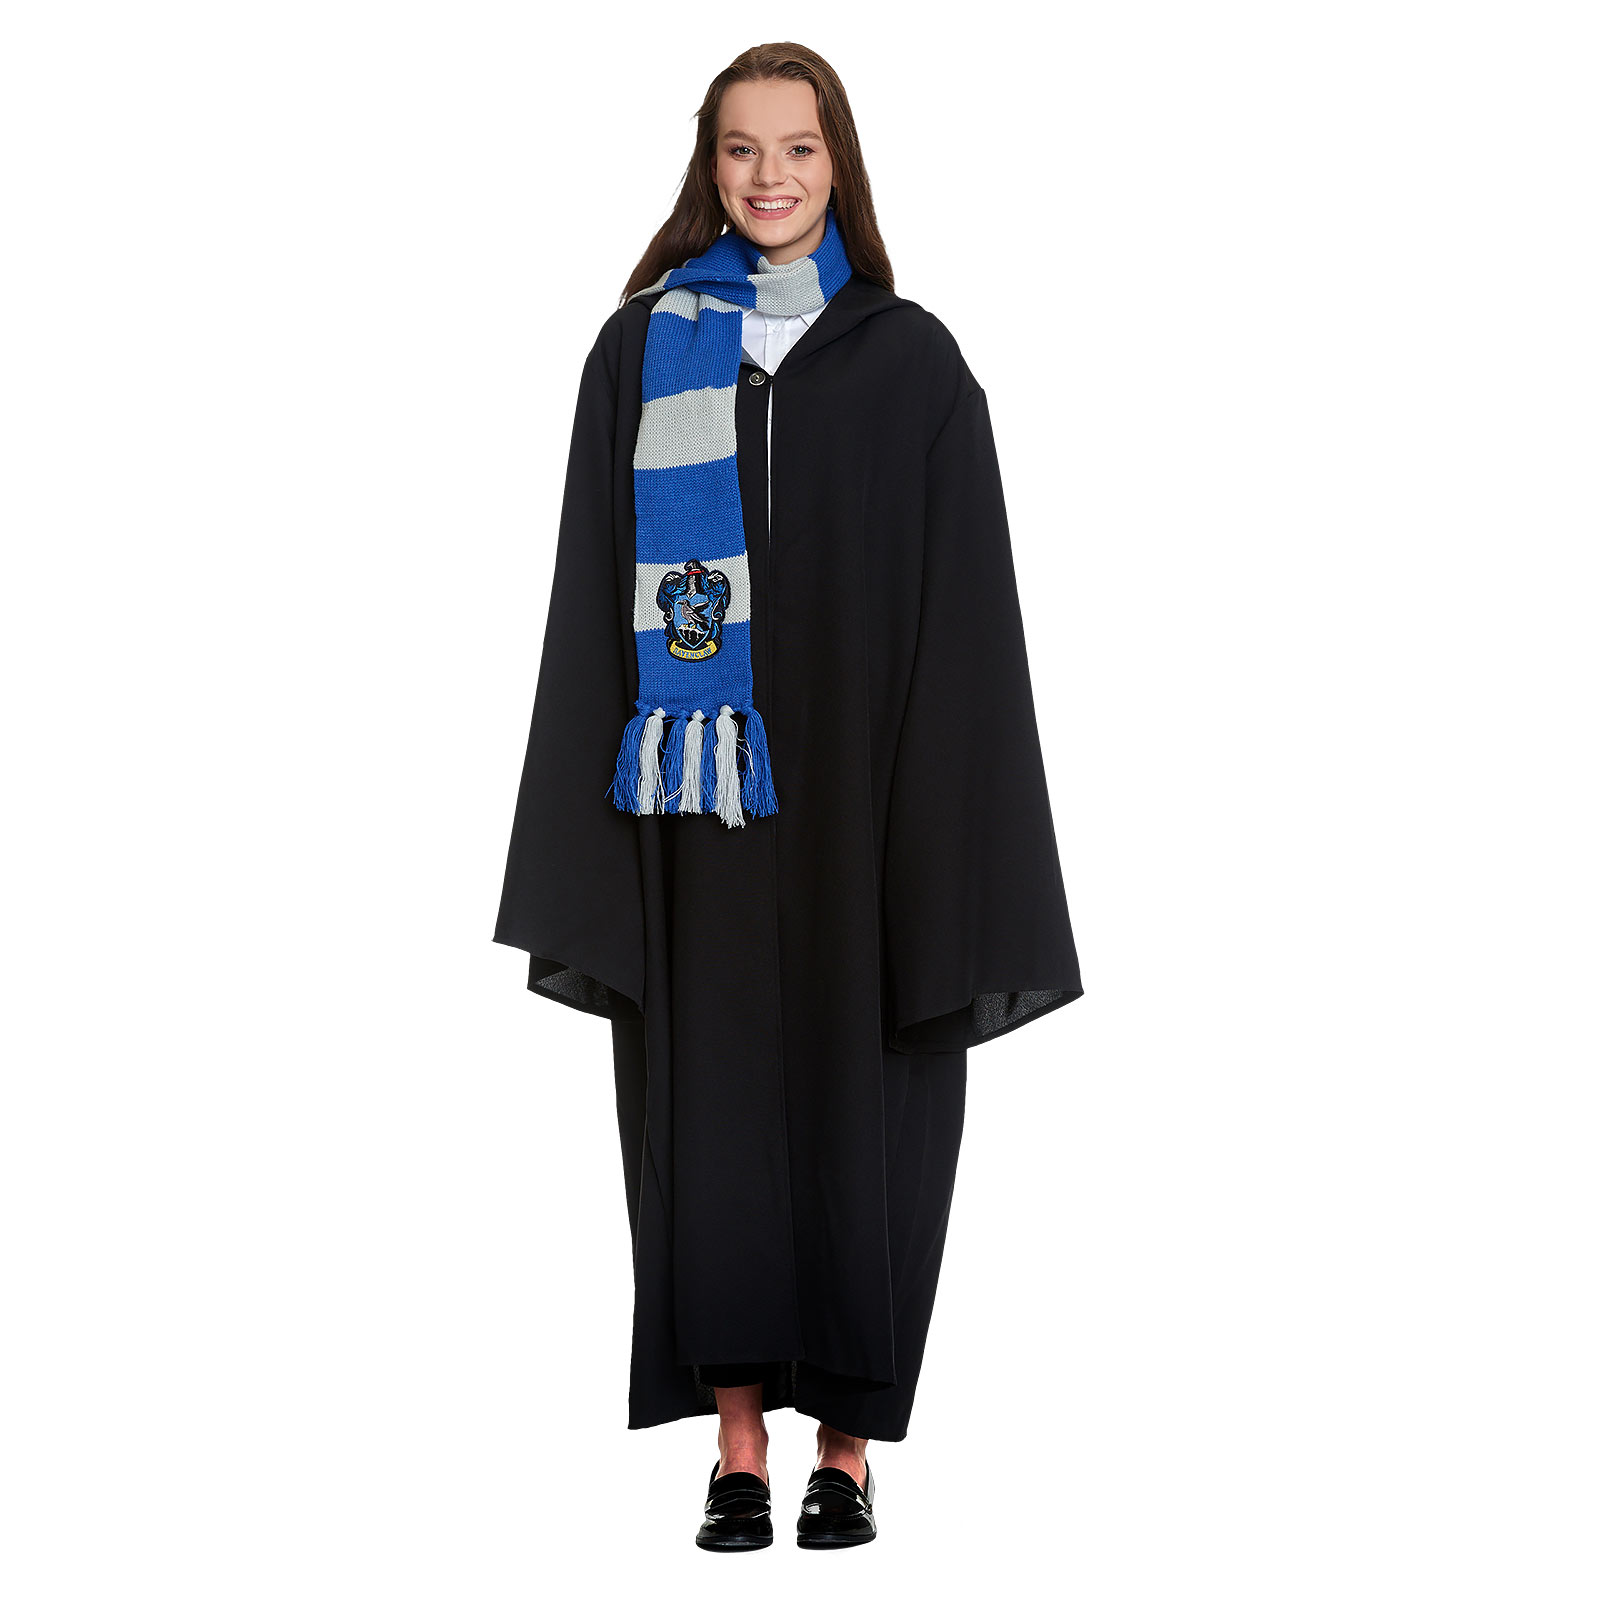 Robe de Costume de Sorcier avec Capuche pour les Fans de Harry Potter